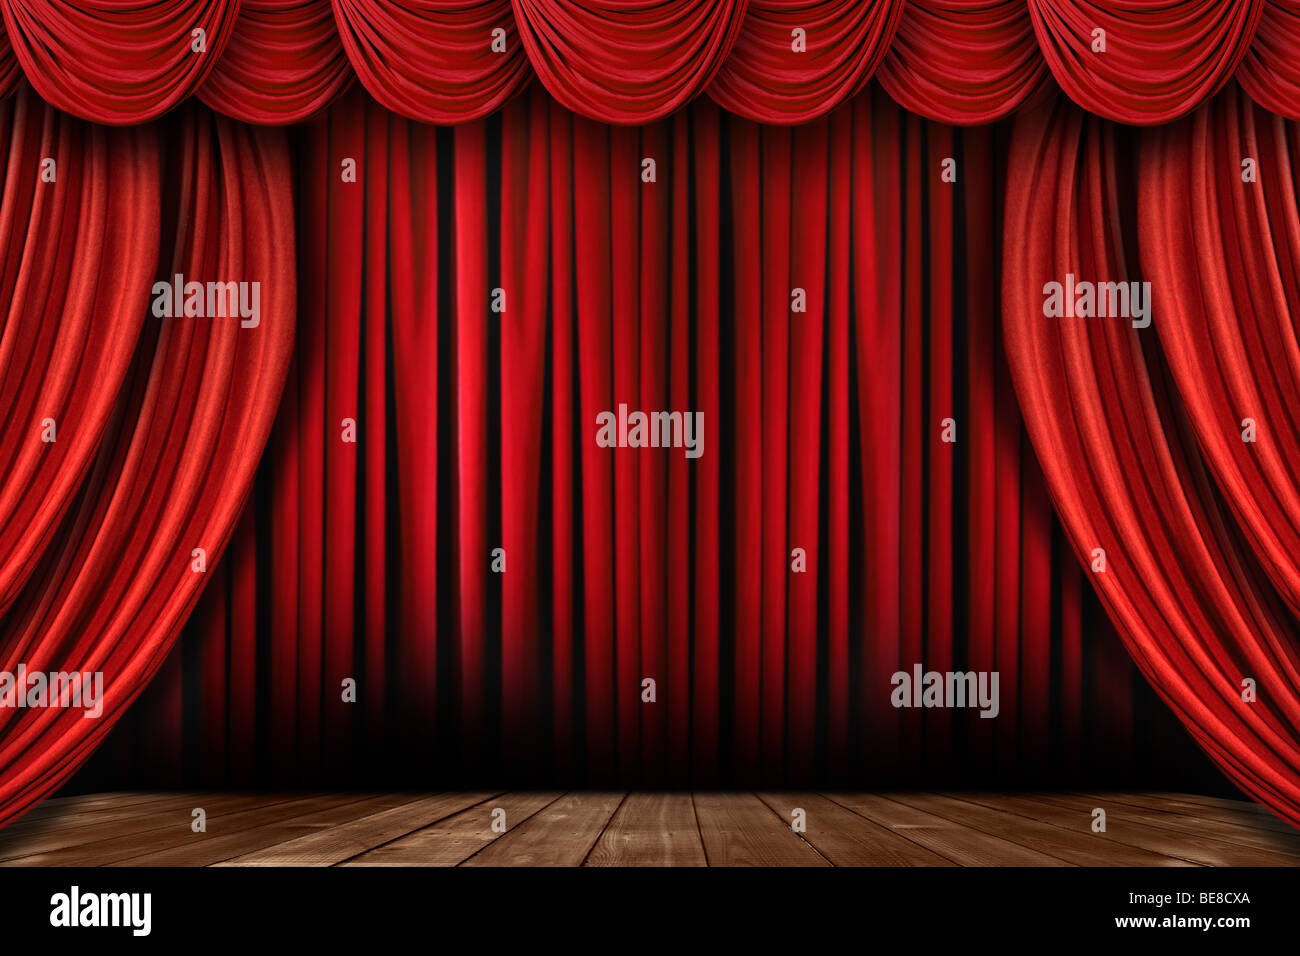 Espectacular escenario cortinas de color rojo brillante con muchos Swags Foto de stock